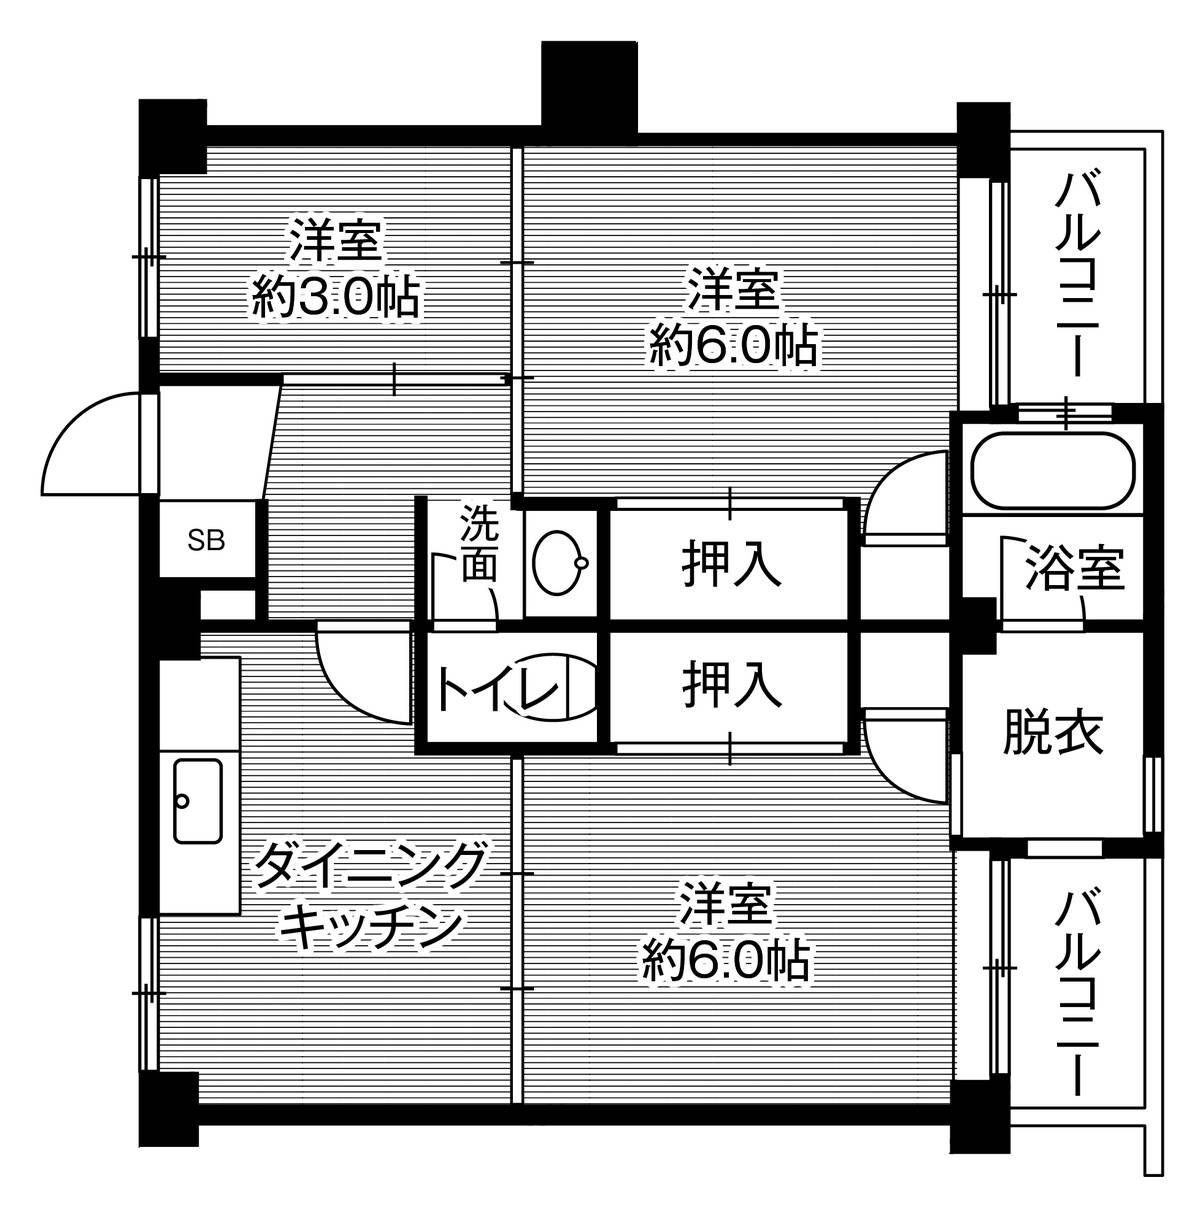 Sơ đồ phòng 3DK của Village House Hagiwara ở Yahatanishi-ku